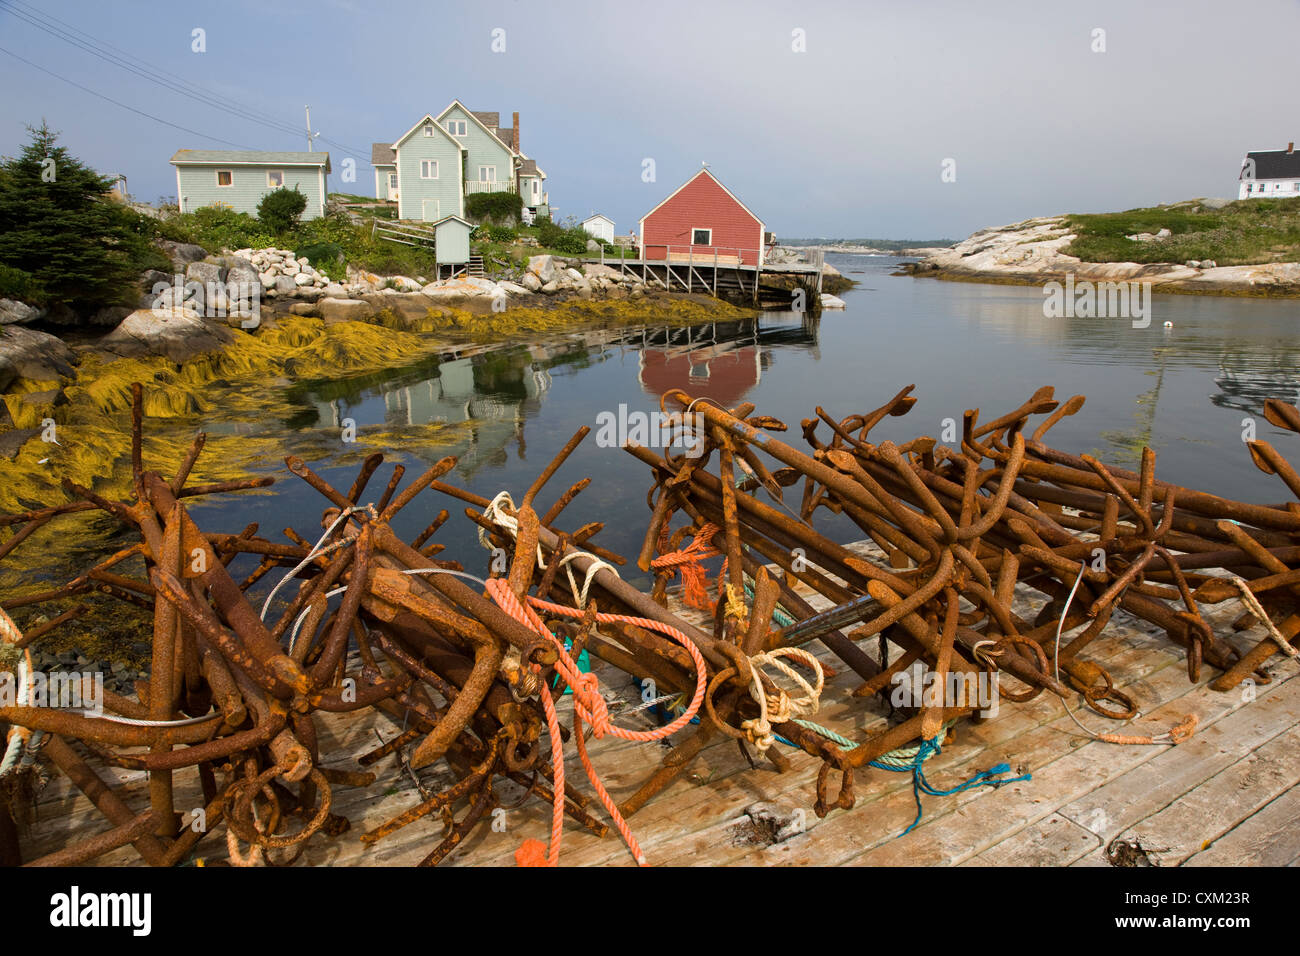 Peggy's Cove fishing village in Nova Scotia, Canada Stock Photo